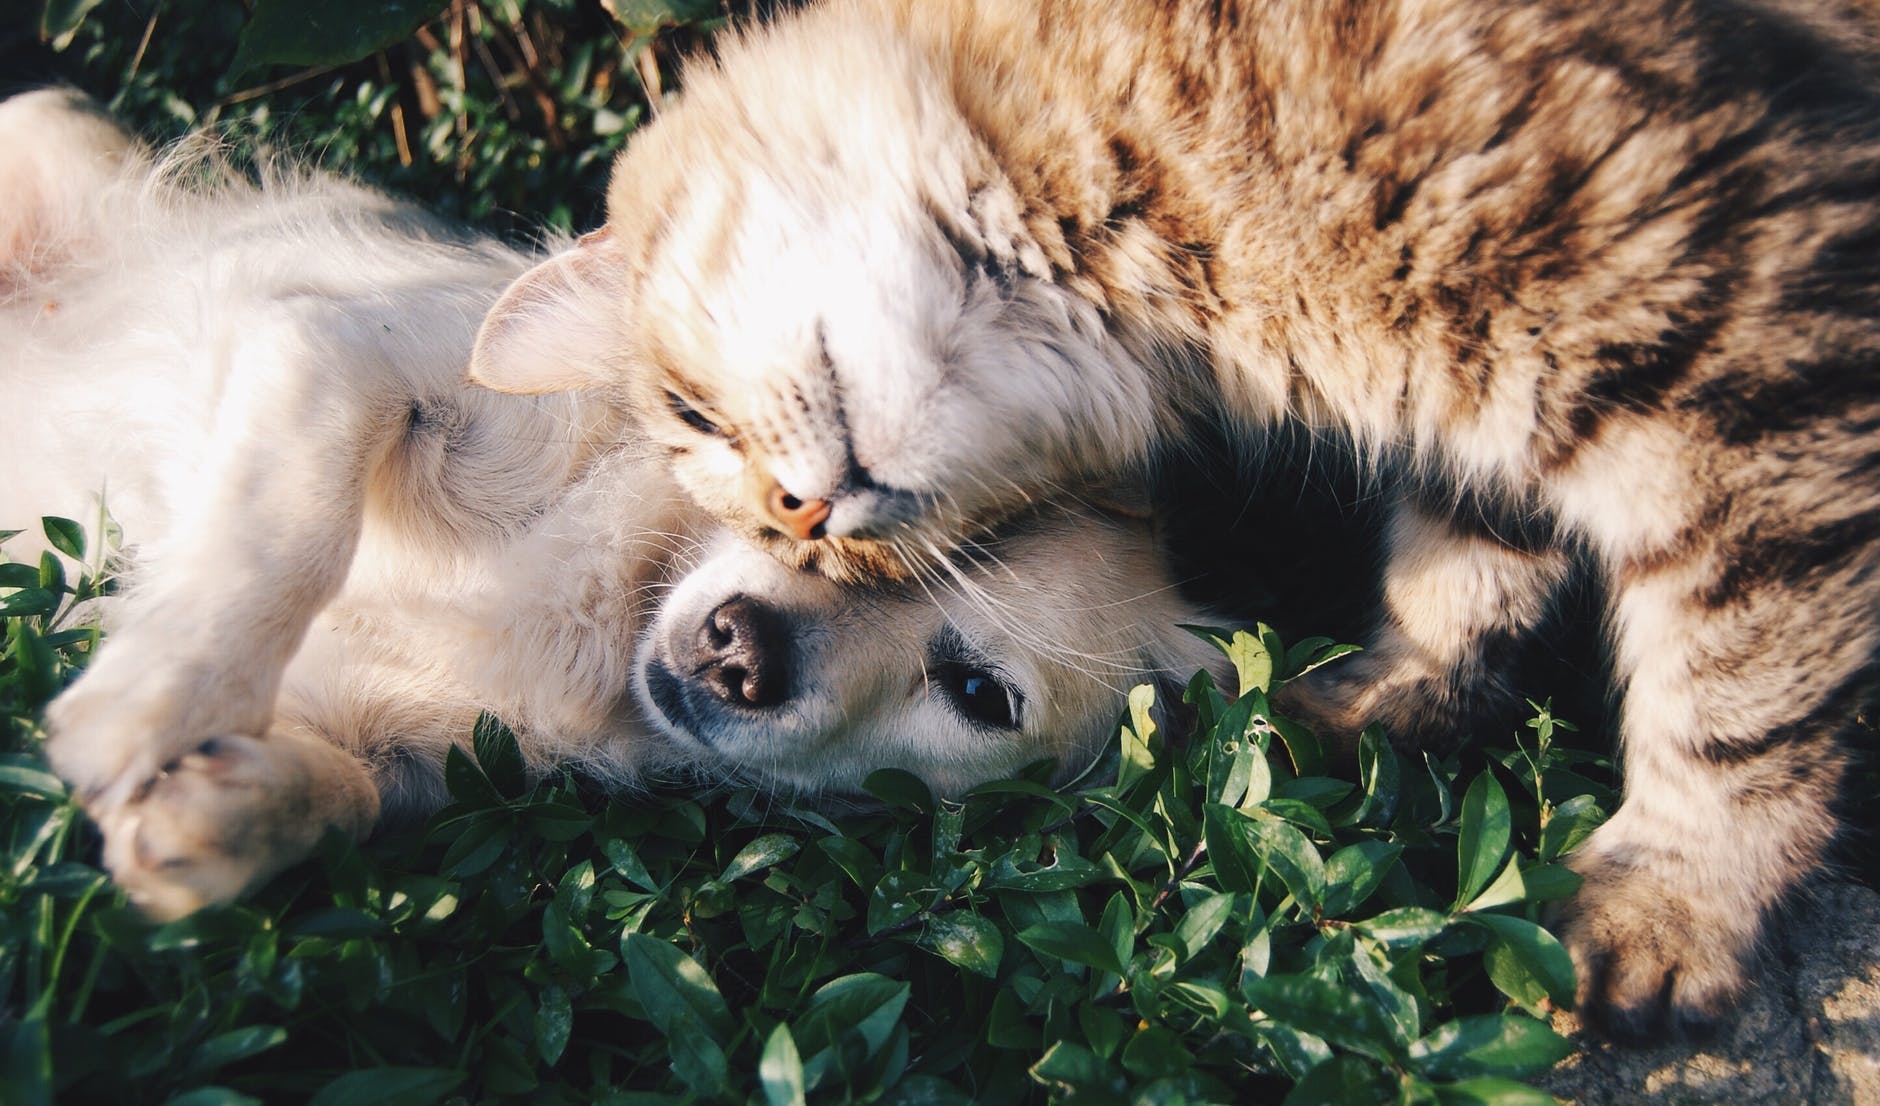 Cão e gato na grama